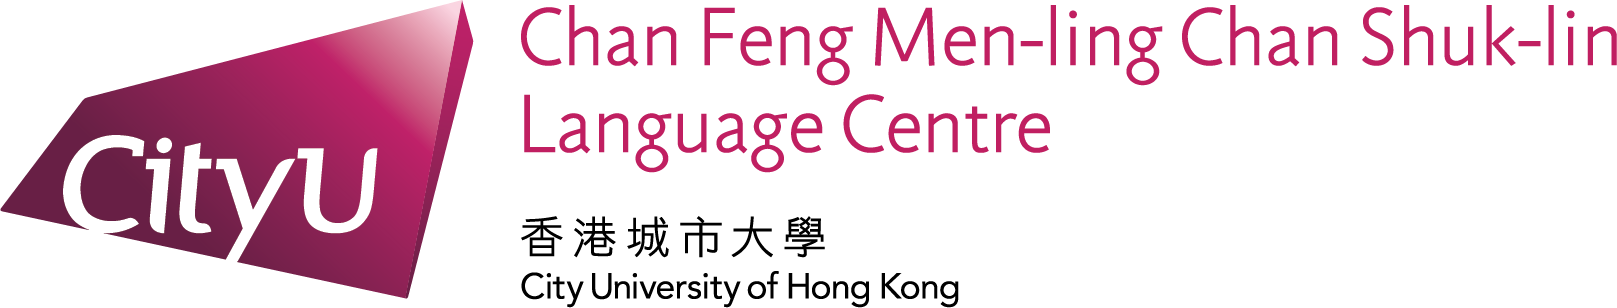 Chan Feng Men-ling Chan Shuk-lin Language Centre